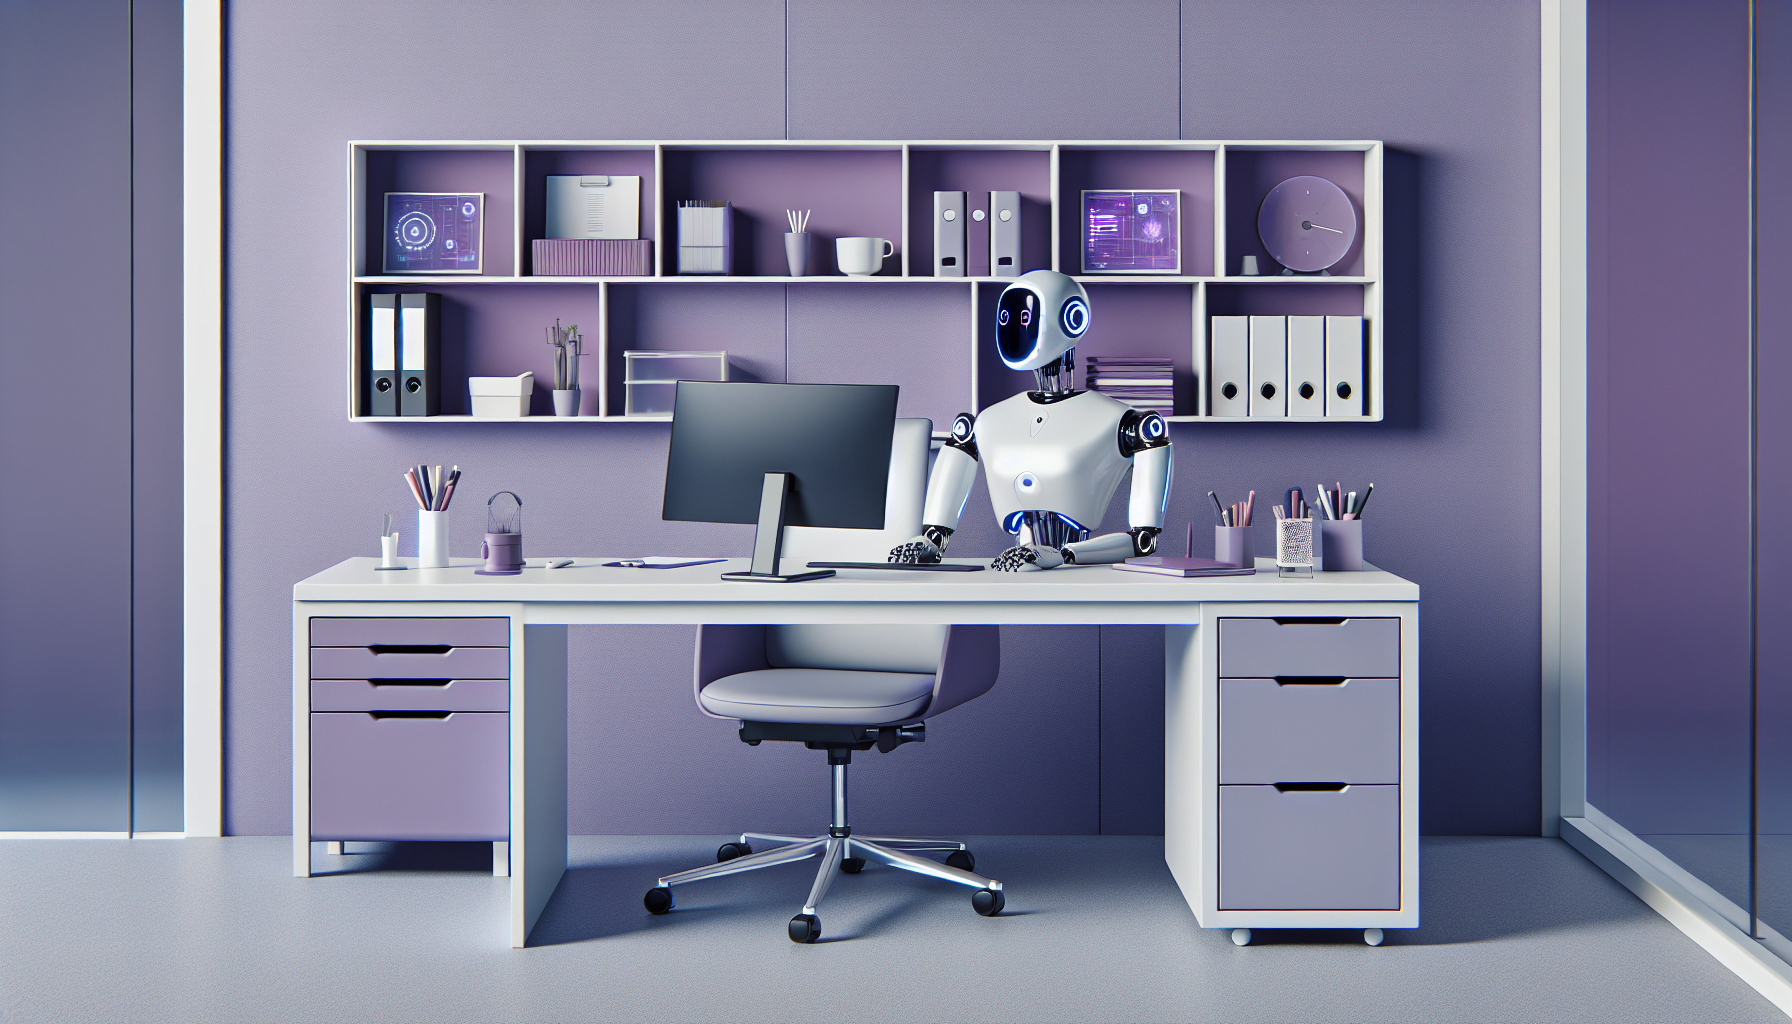 bureau moderne violet avec accessoires essentiels et robot consultant AI integre design epure futuriste haute technologie.jpeg